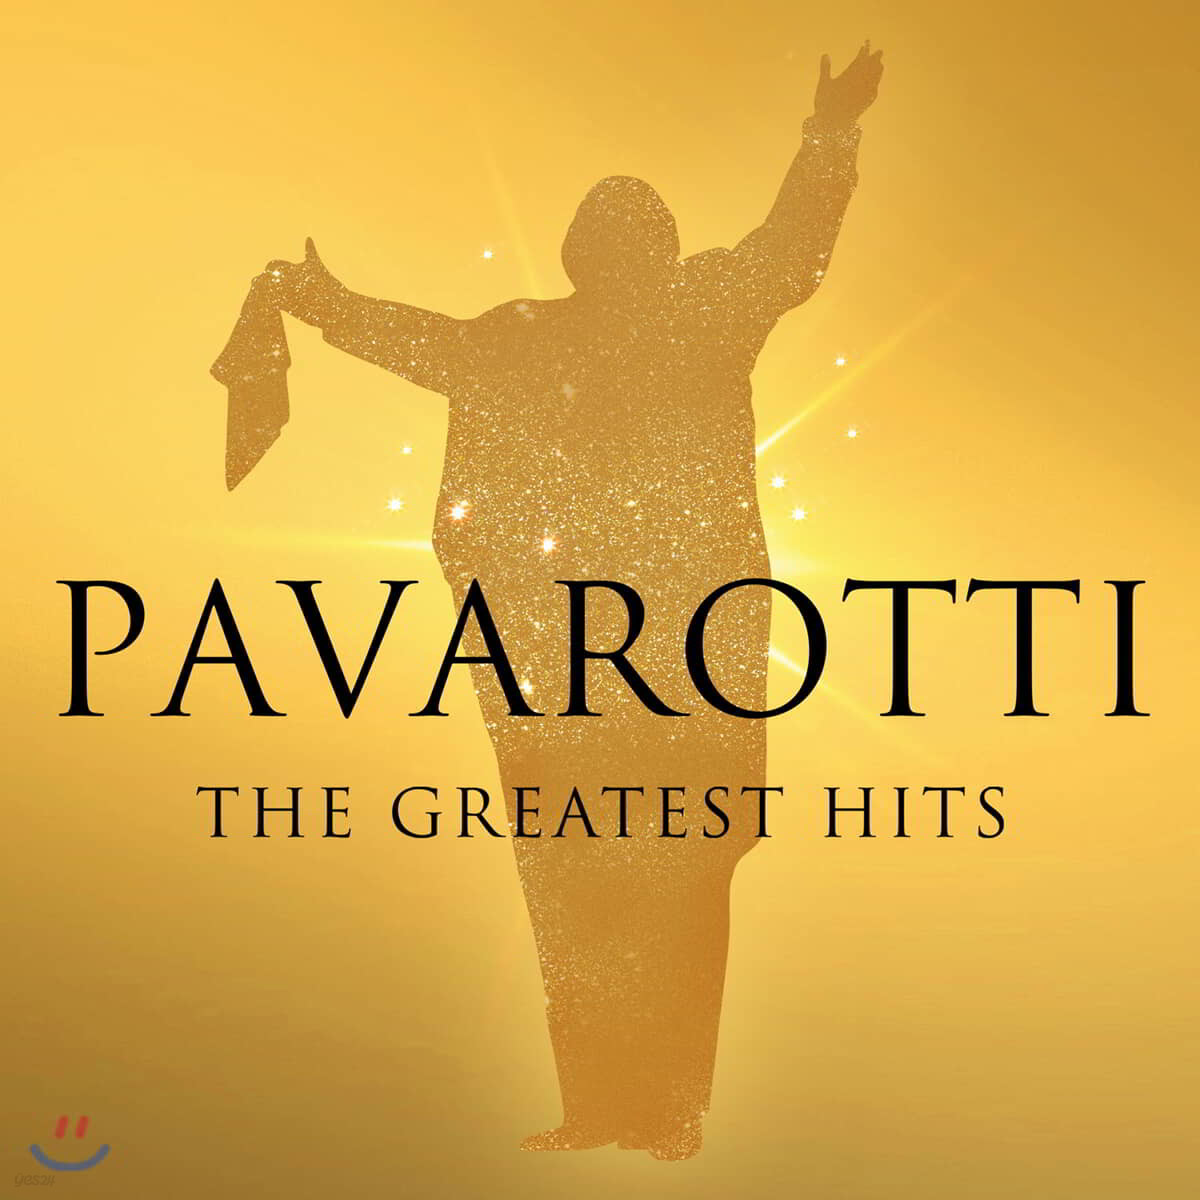 루치아노 파바로티 베스트 앨범 (Luciano Pavarotti - The Greatest Hits)